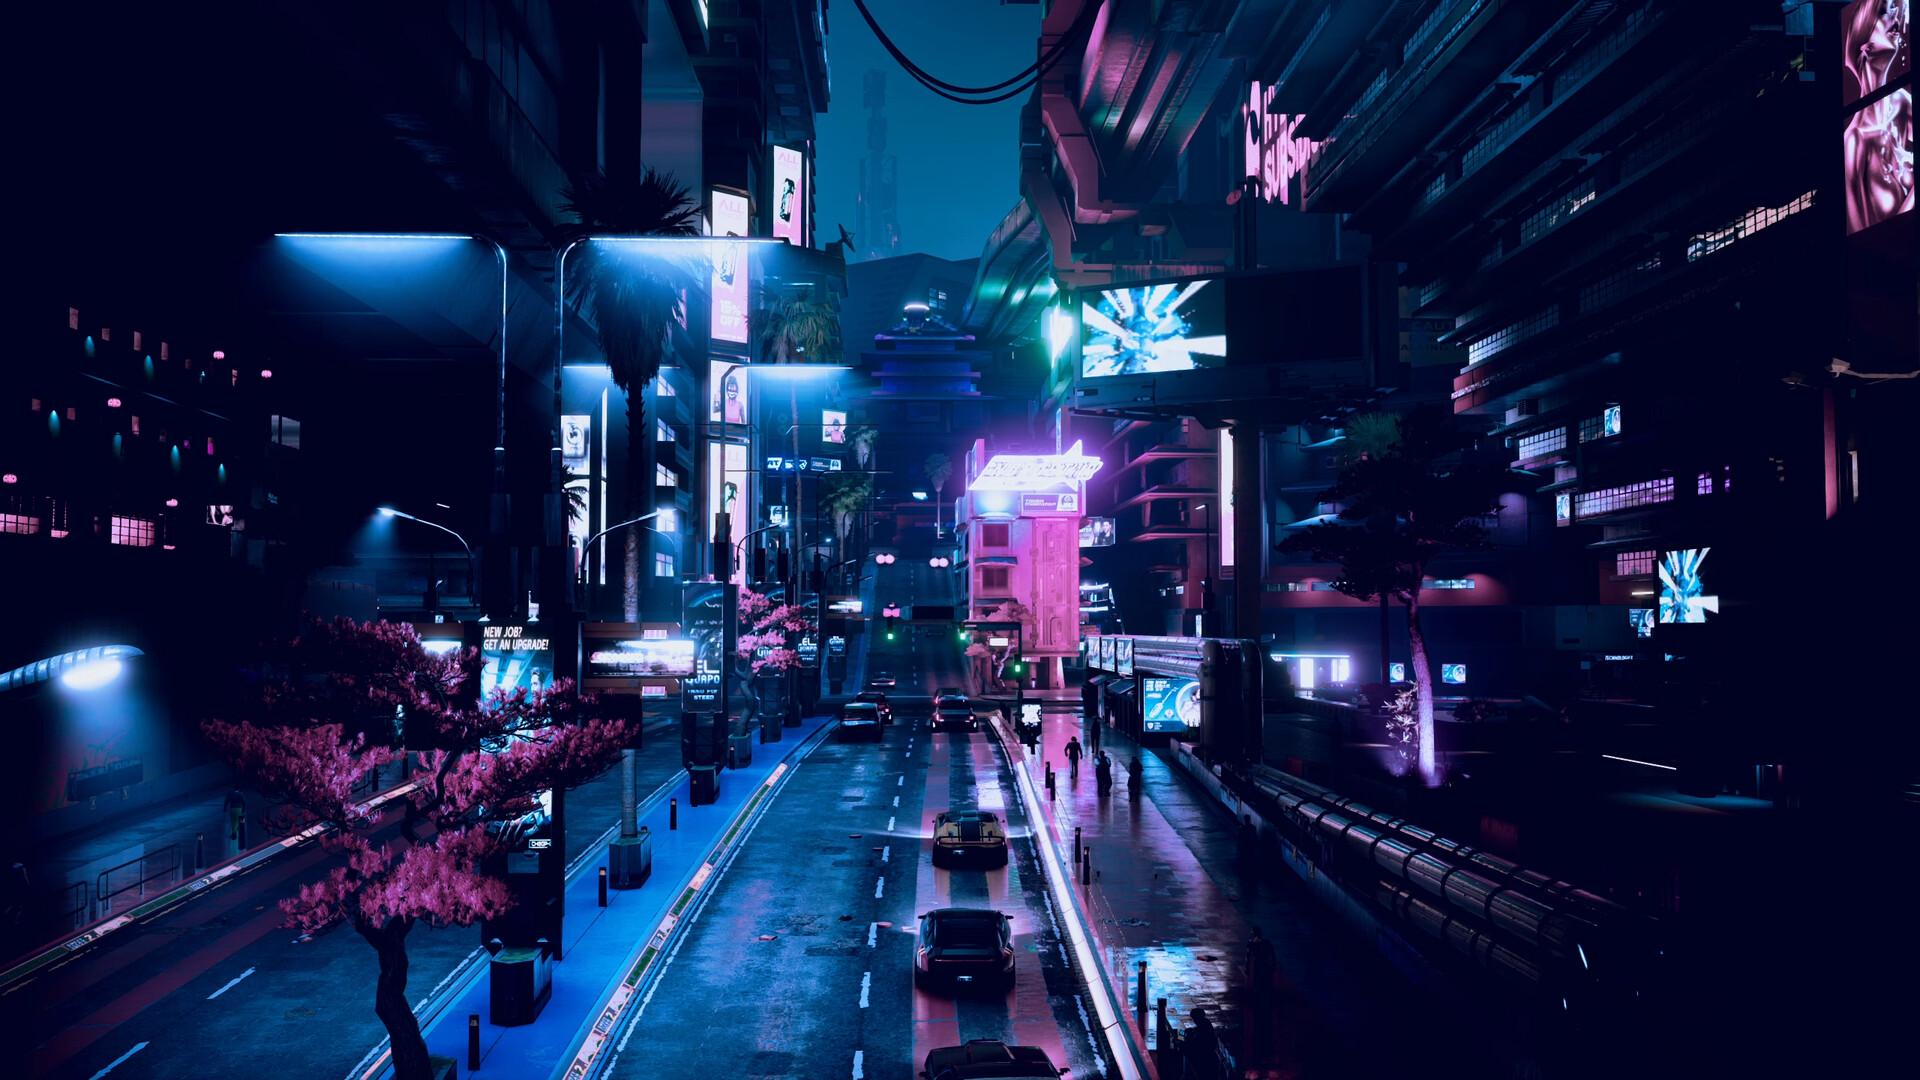 ArtStation - Cyberpunk 2077 - City Scenes - 06 - Cyberpunk, là nơi lý tưởng để tìm kiếm những bức ảnh đầy lôi cuốn về thành phố trong tương lai. Hãy đắm mình trong không khí rực rỡ và mơ mộng của thế giới Cyberpunk!